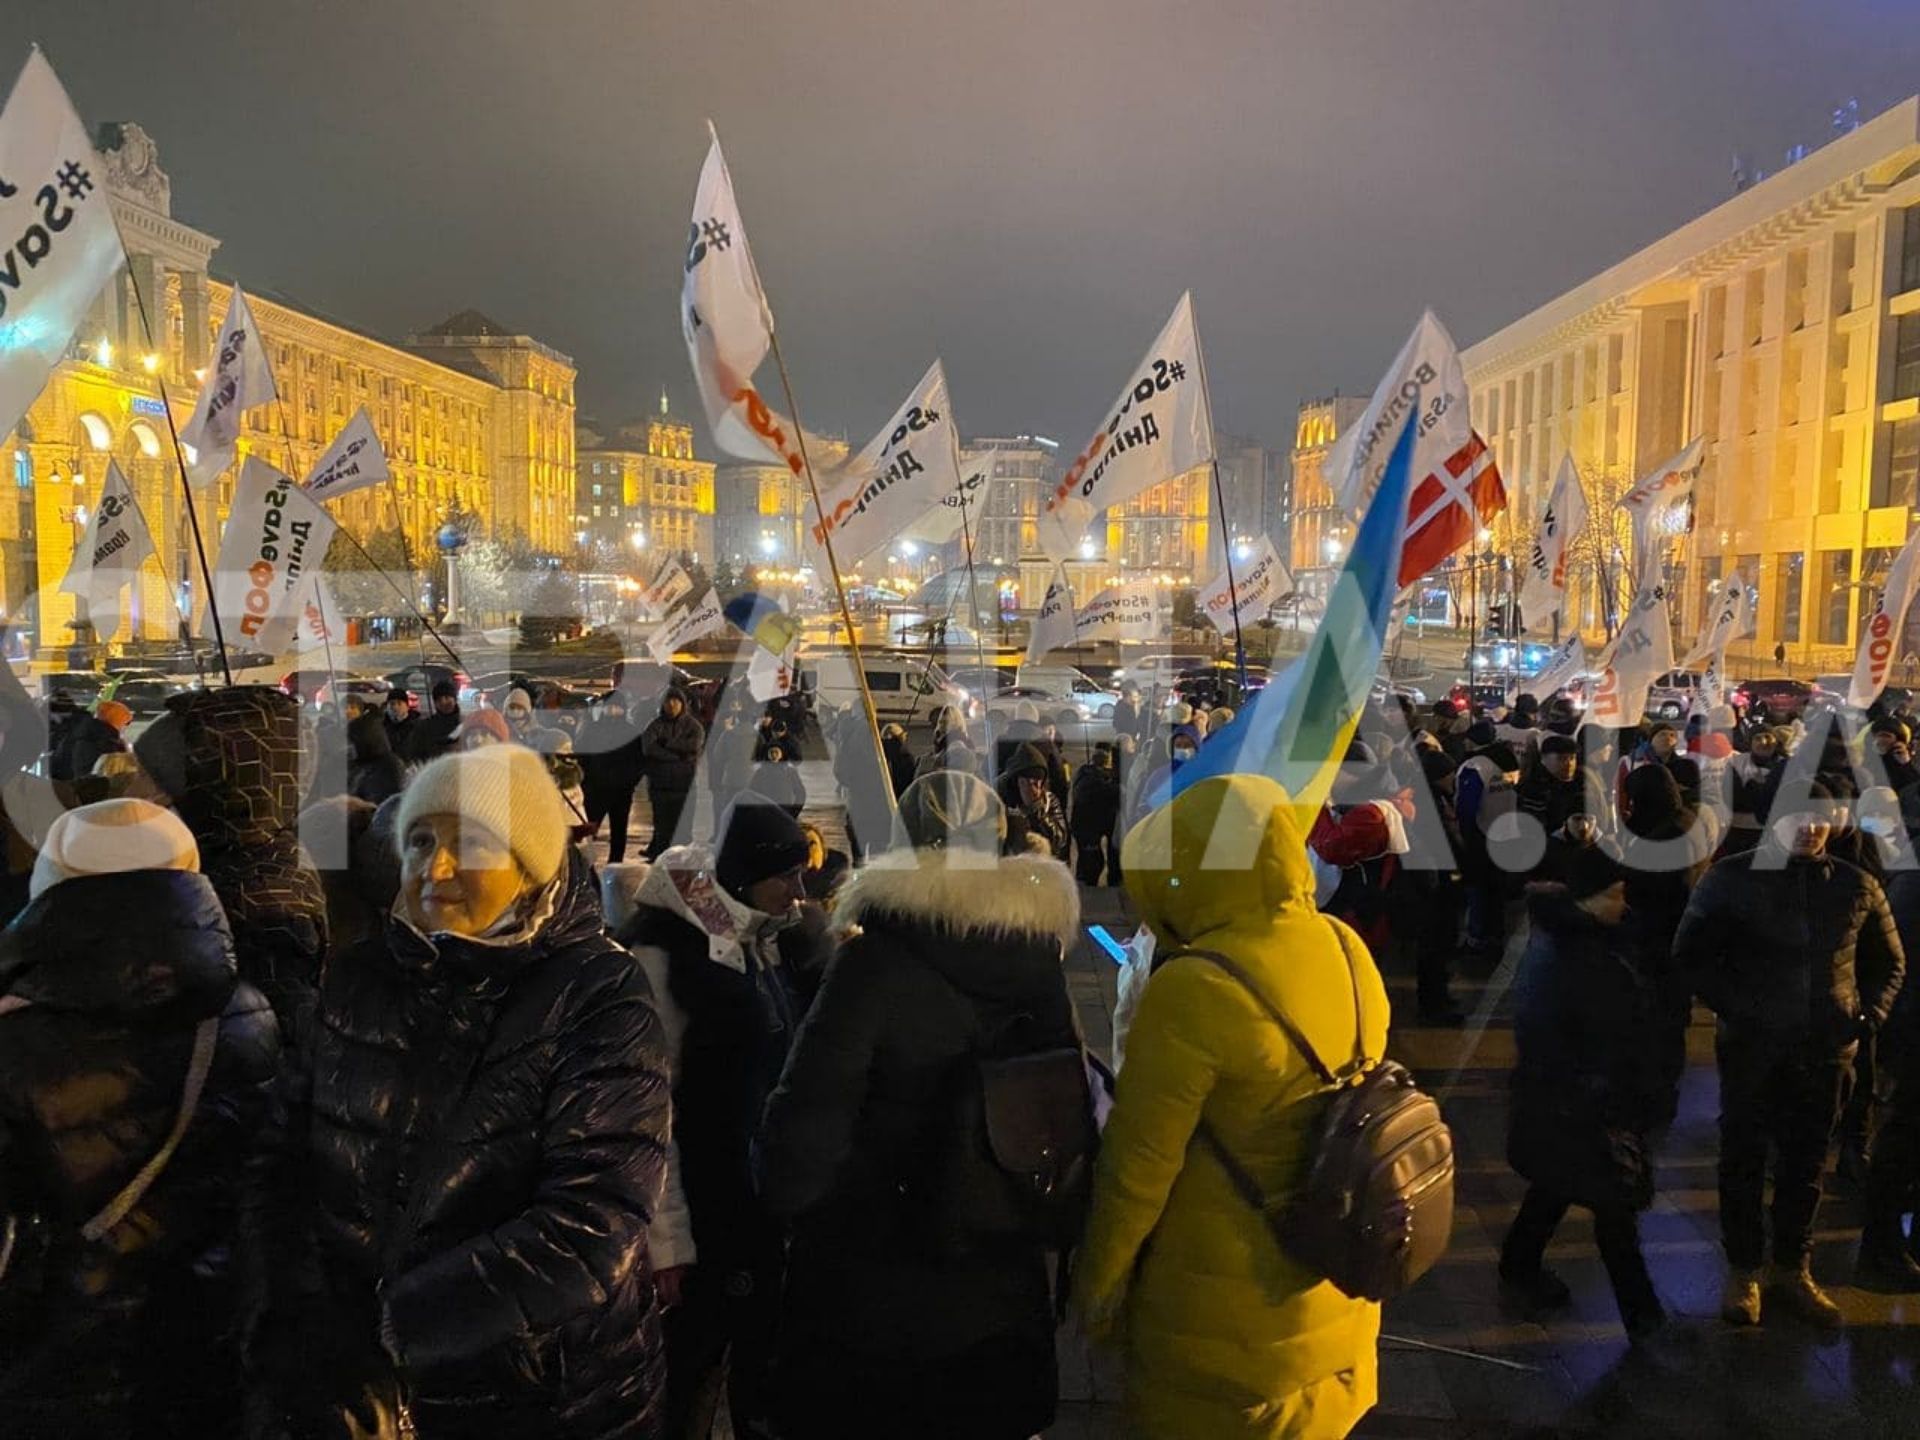 ФОП-Майдан продолжит стоять в центре Киева "пока не закончатся силы" - организатор. Фото: Страна